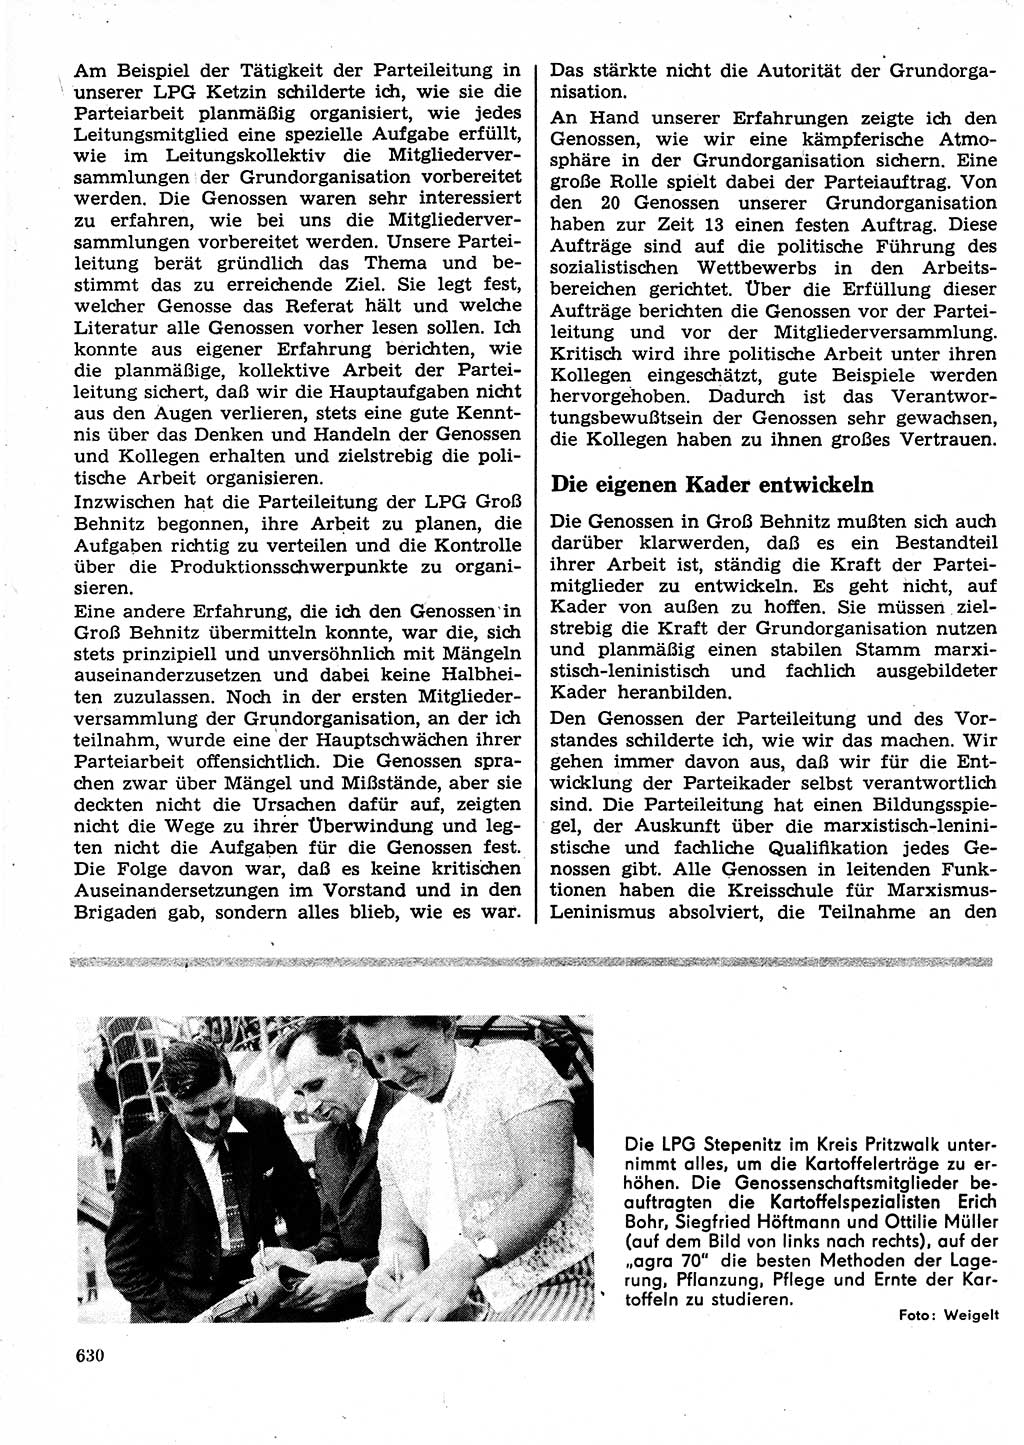 Neuer Weg (NW), Organ des Zentralkomitees (ZK) der SED (Sozialistische Einheitspartei Deutschlands) für Fragen des Parteilebens, 25. Jahrgang [Deutsche Demokratische Republik (DDR)] 1970, Seite 630 (NW ZK SED DDR 1970, S. 630)